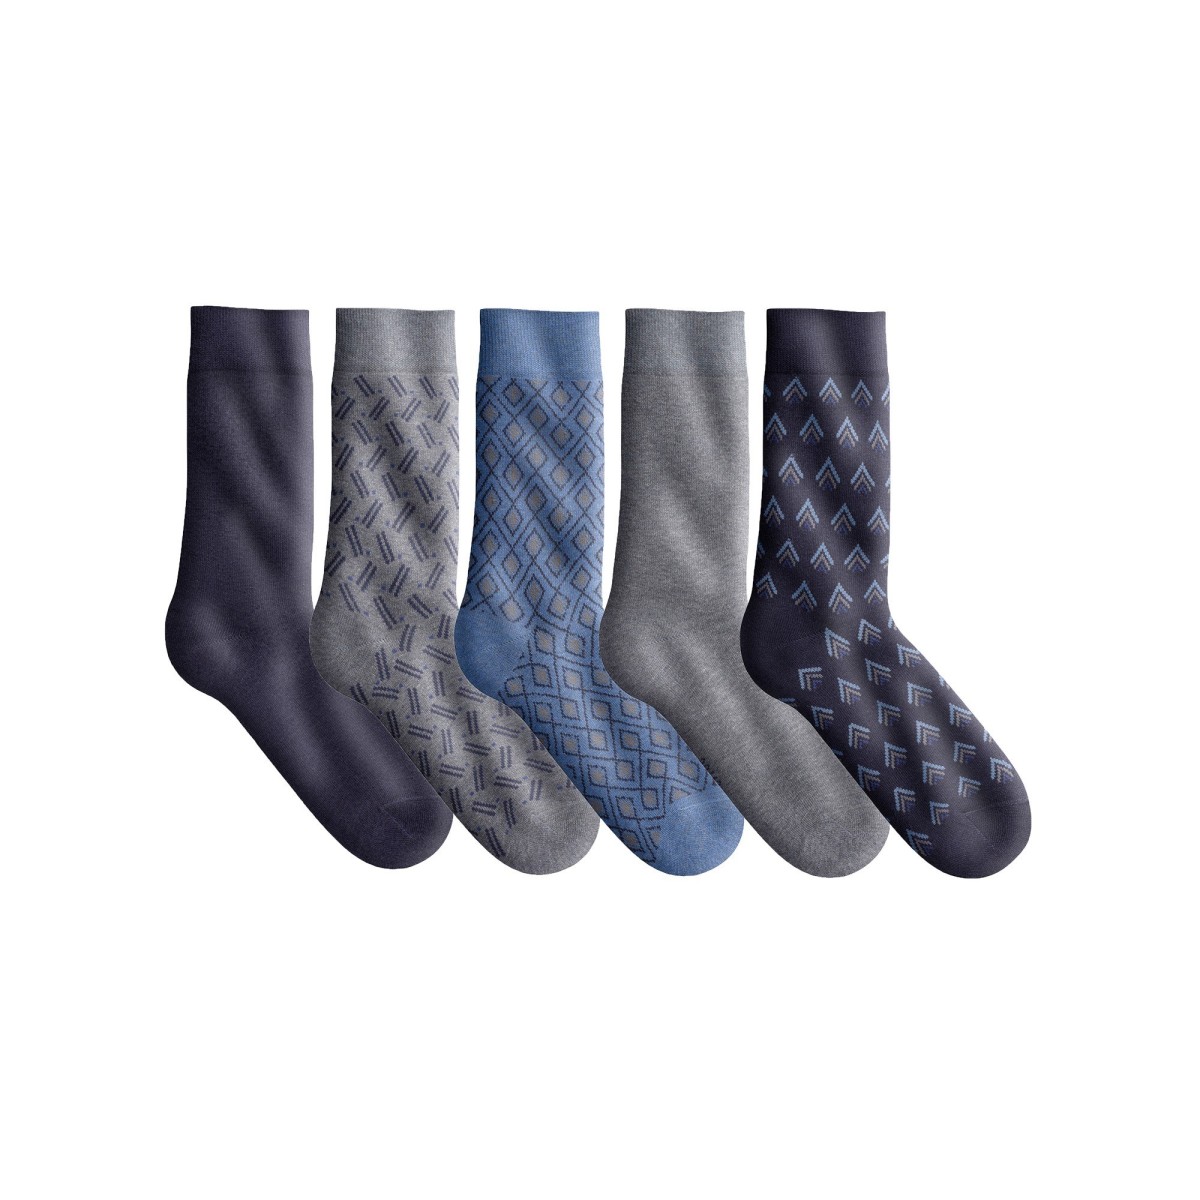 Blancheporte Sada 5 párů originálních ponožek nám.modrámodrášedý melír 3942